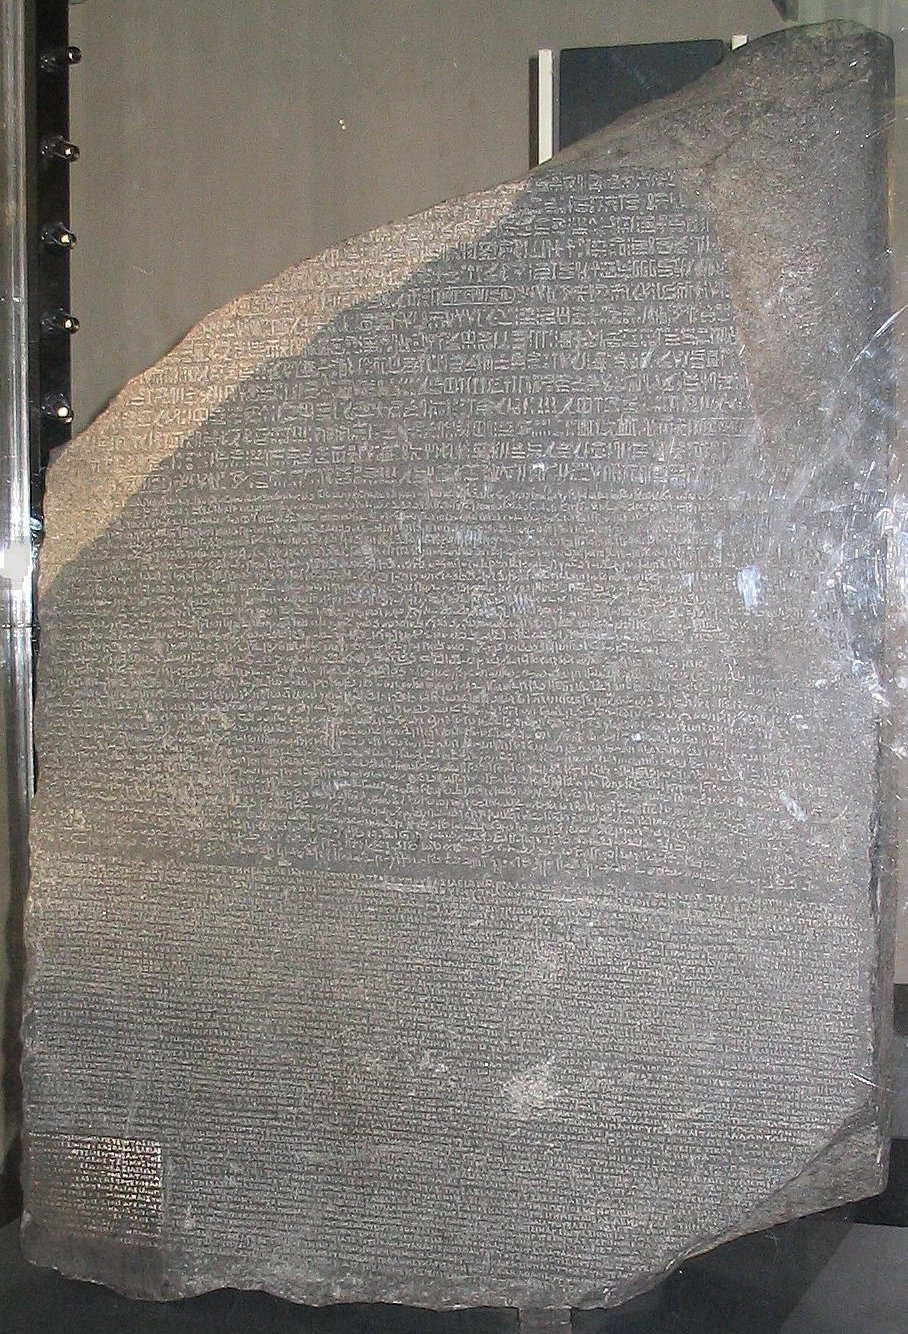 O que é a Pedra de Roseta, o mais importante documento arqueológico sobre o  Egito Antigo?